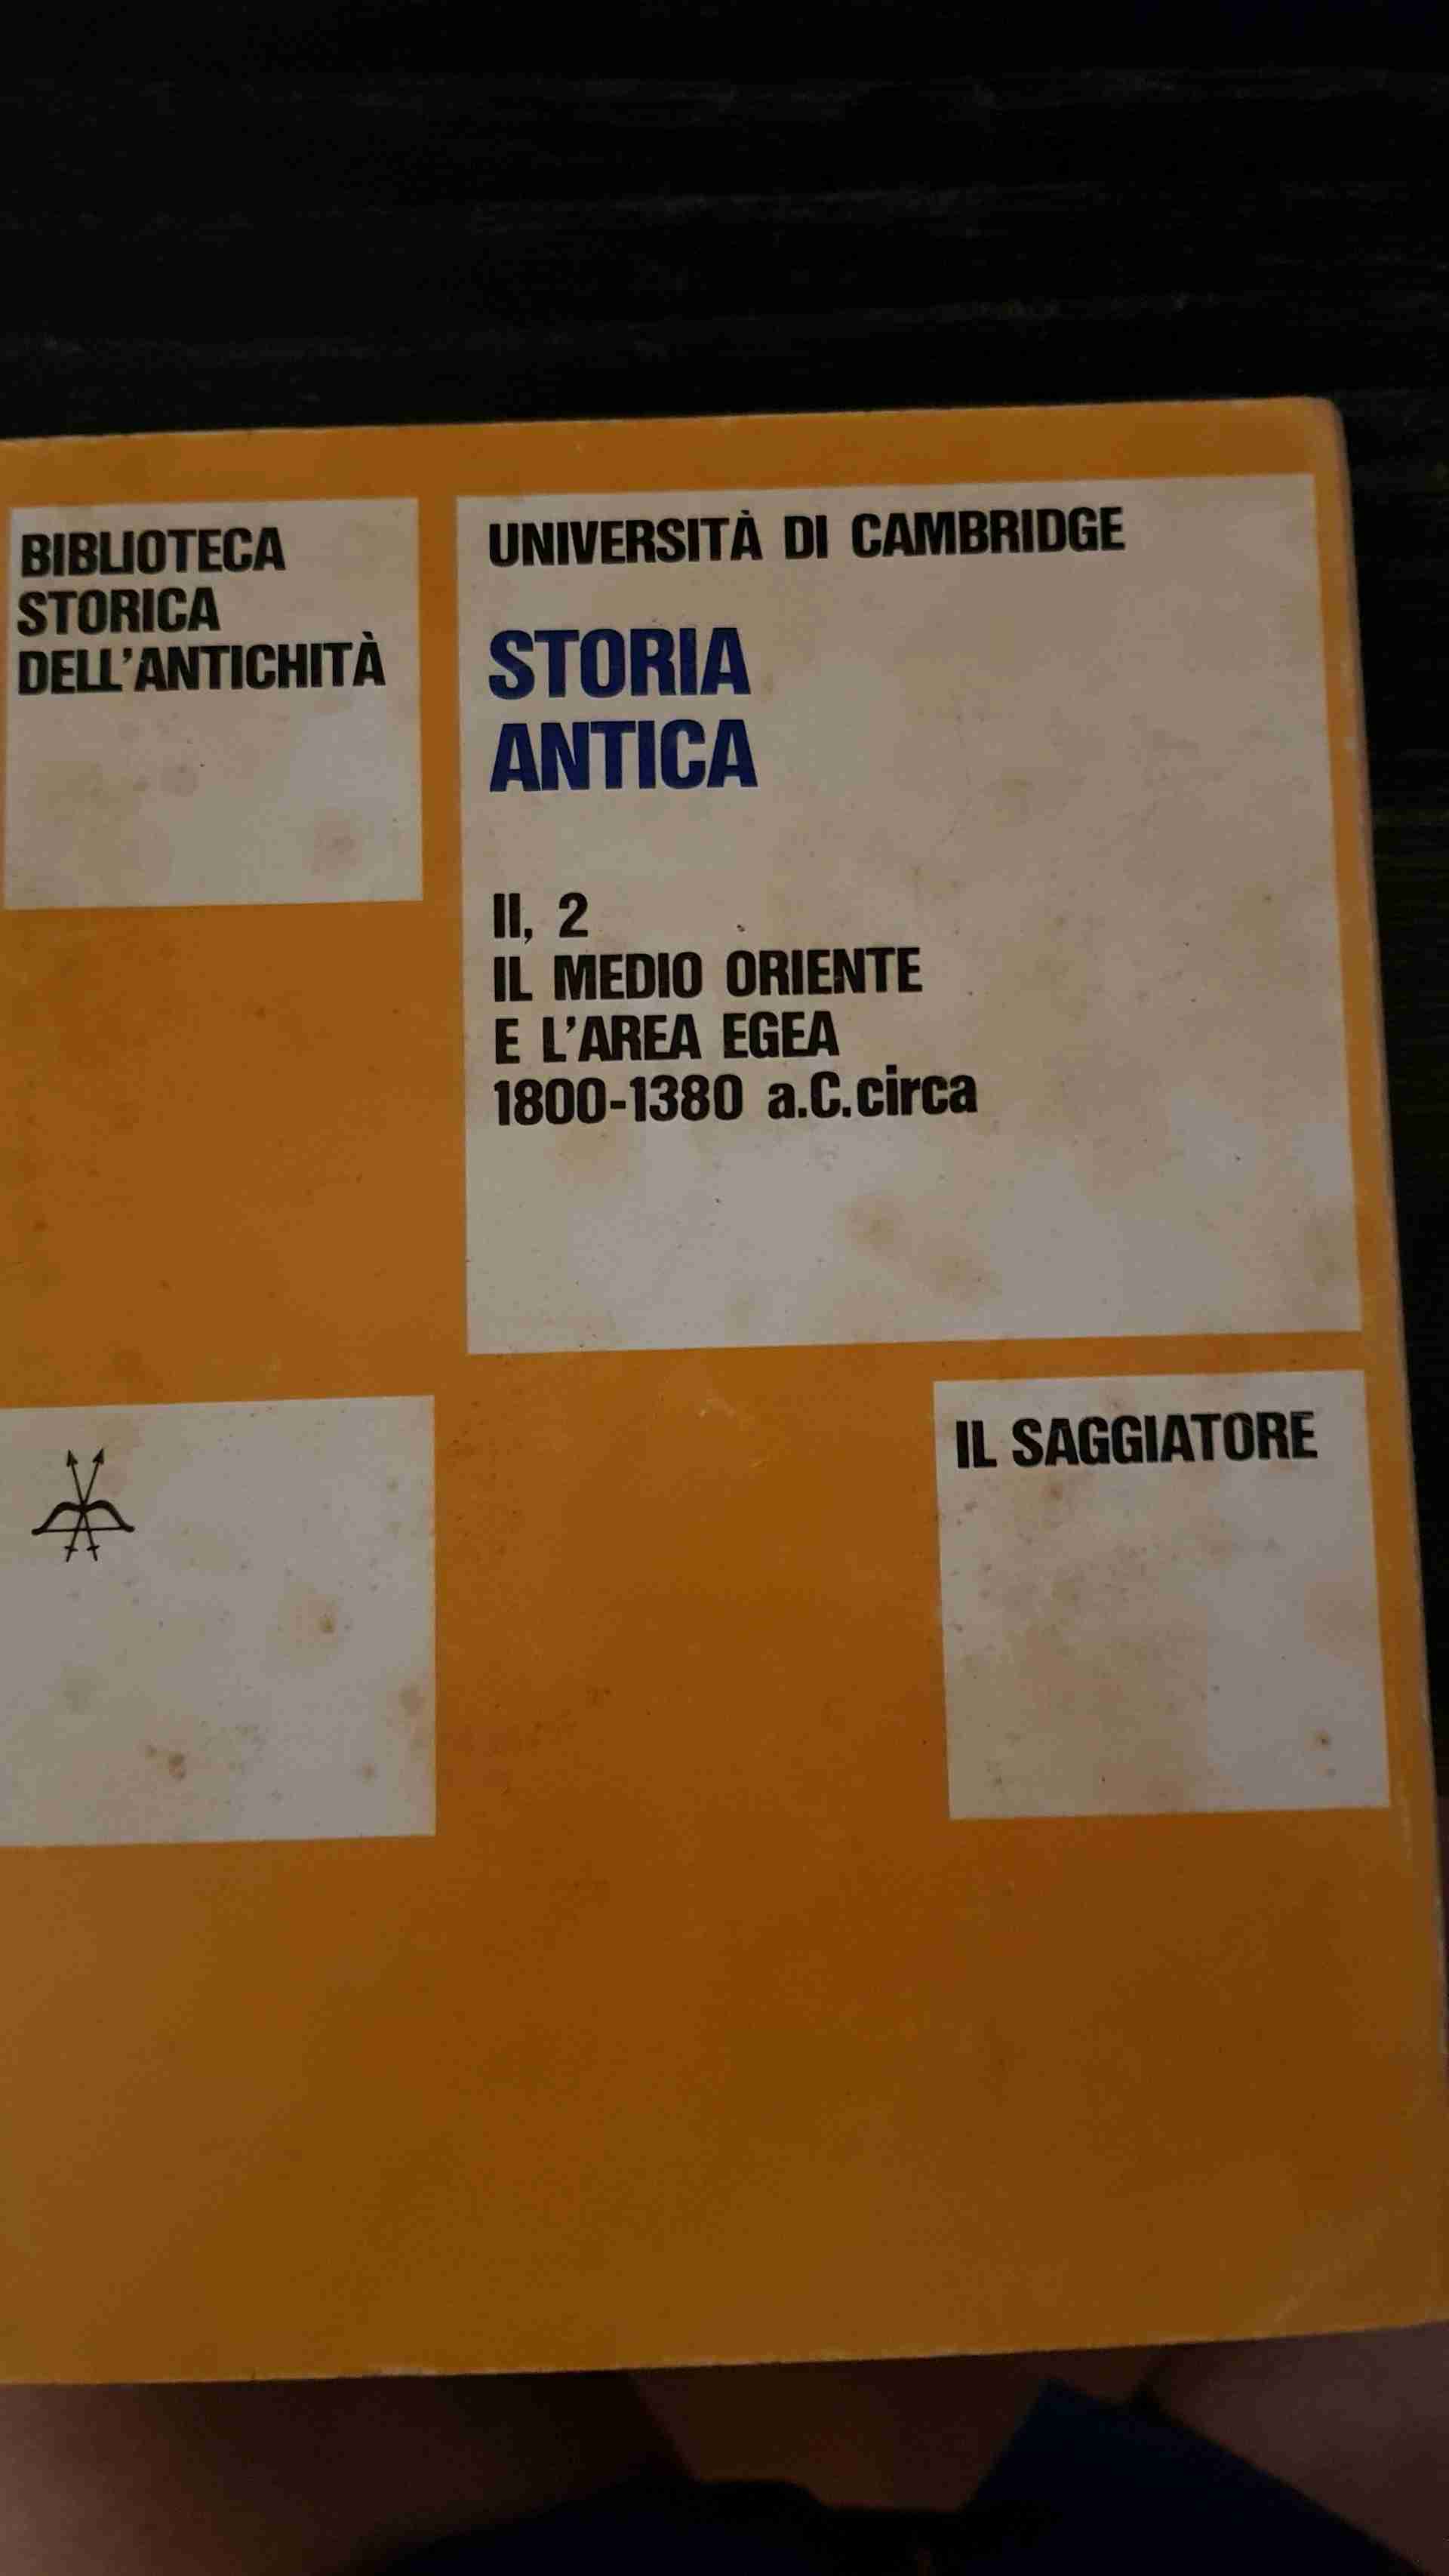 Storia antica volume VII,2 Il medio oriente e l'area egea -1800 - 1380 A.C circa